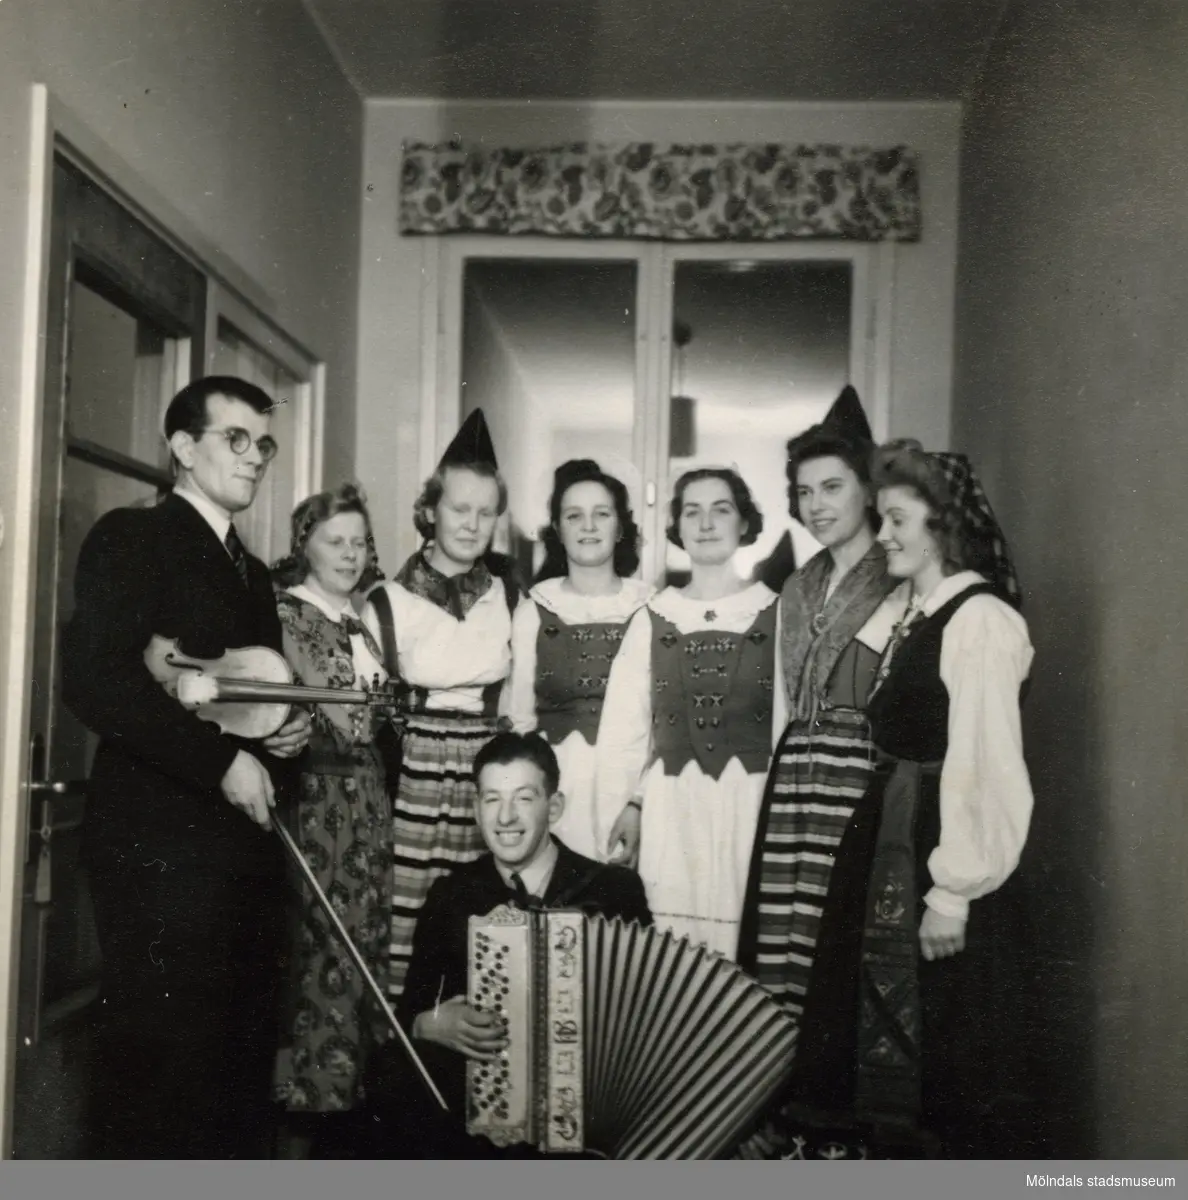 Personalfest på Streteredshemmet i Kållered, år 1955. Ivar, Ella Frohm, okänd, Ingrid Fallgren, okänd, Gunvor Klingvall, Nils Winqvist (dragspel).